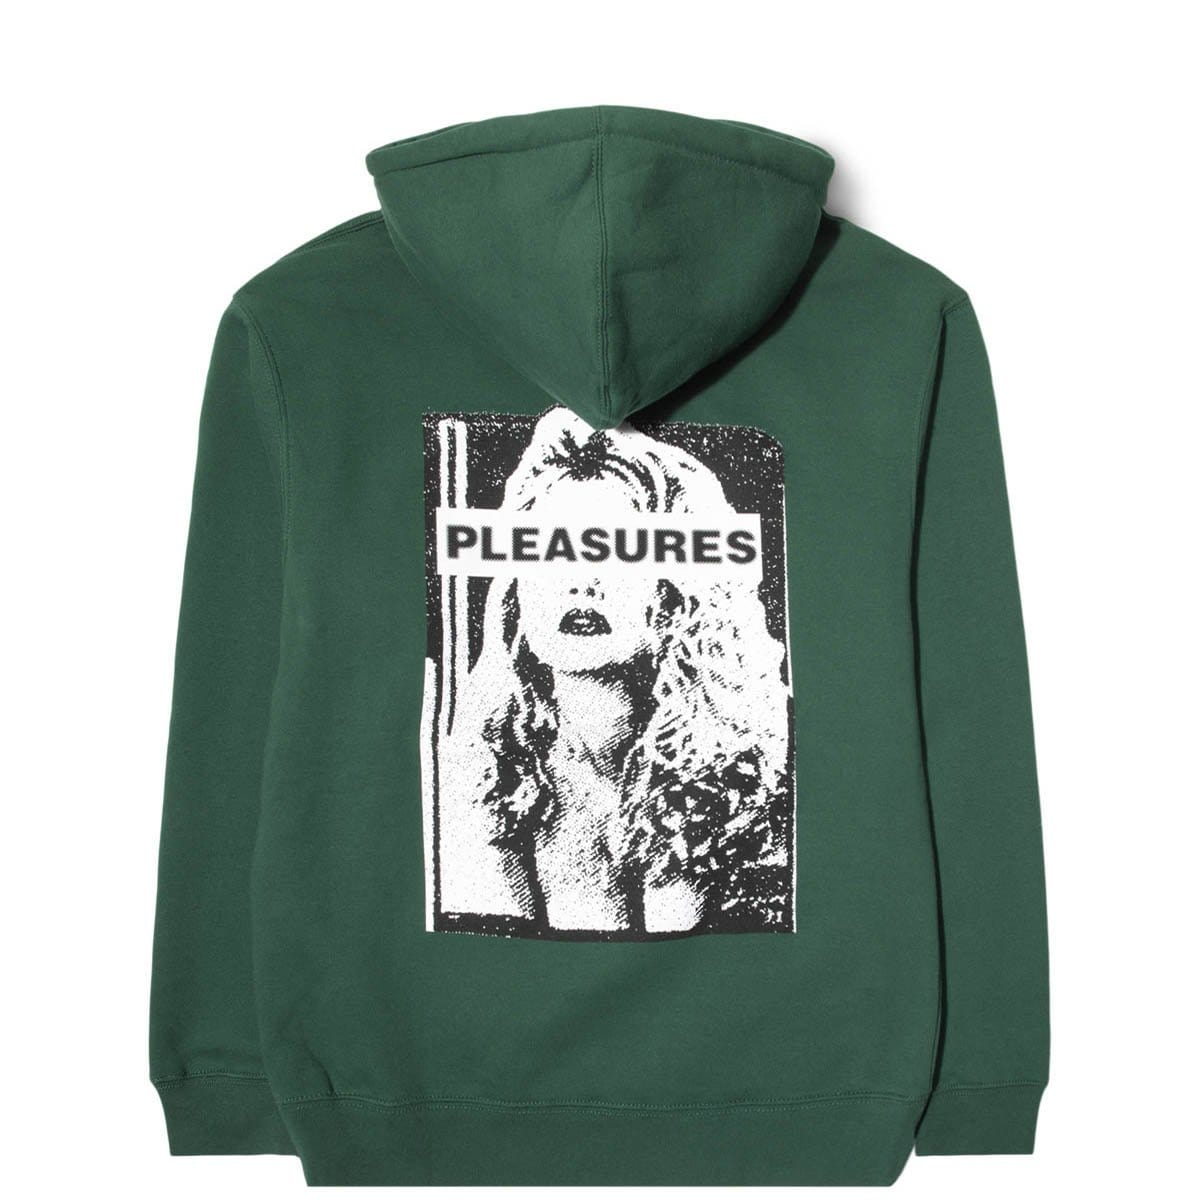 Pleasures Hoodies & Sweatshirts HATE FREE HOODY